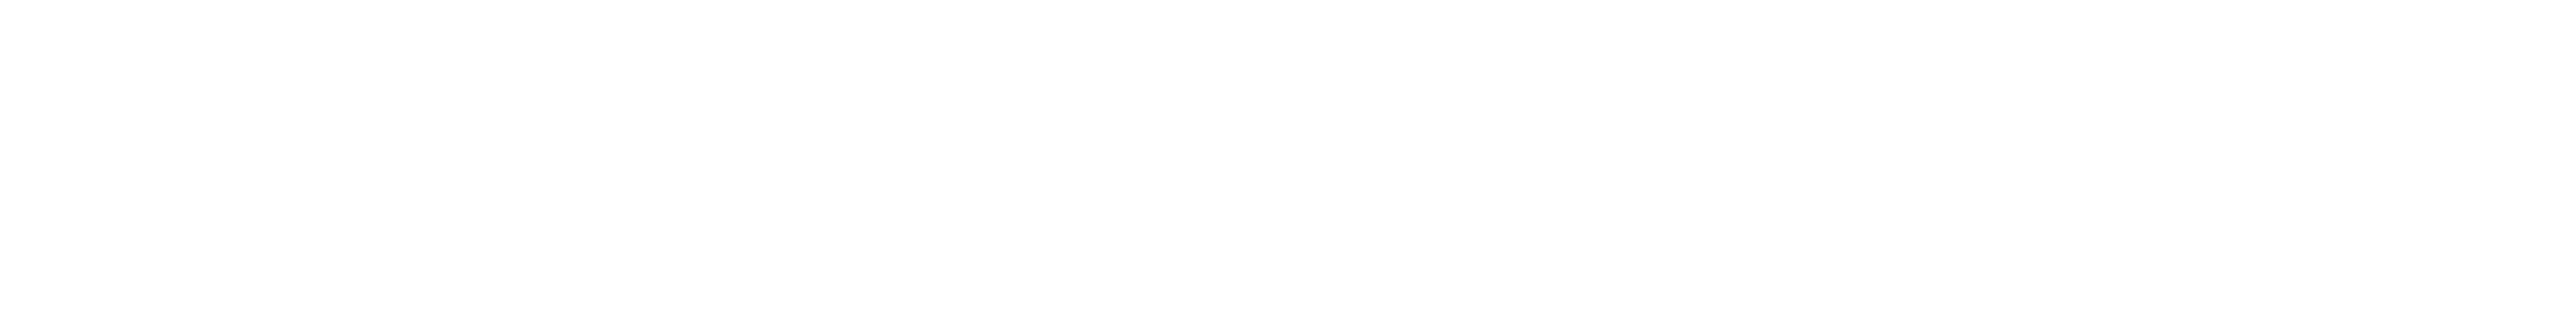 America - Bless God